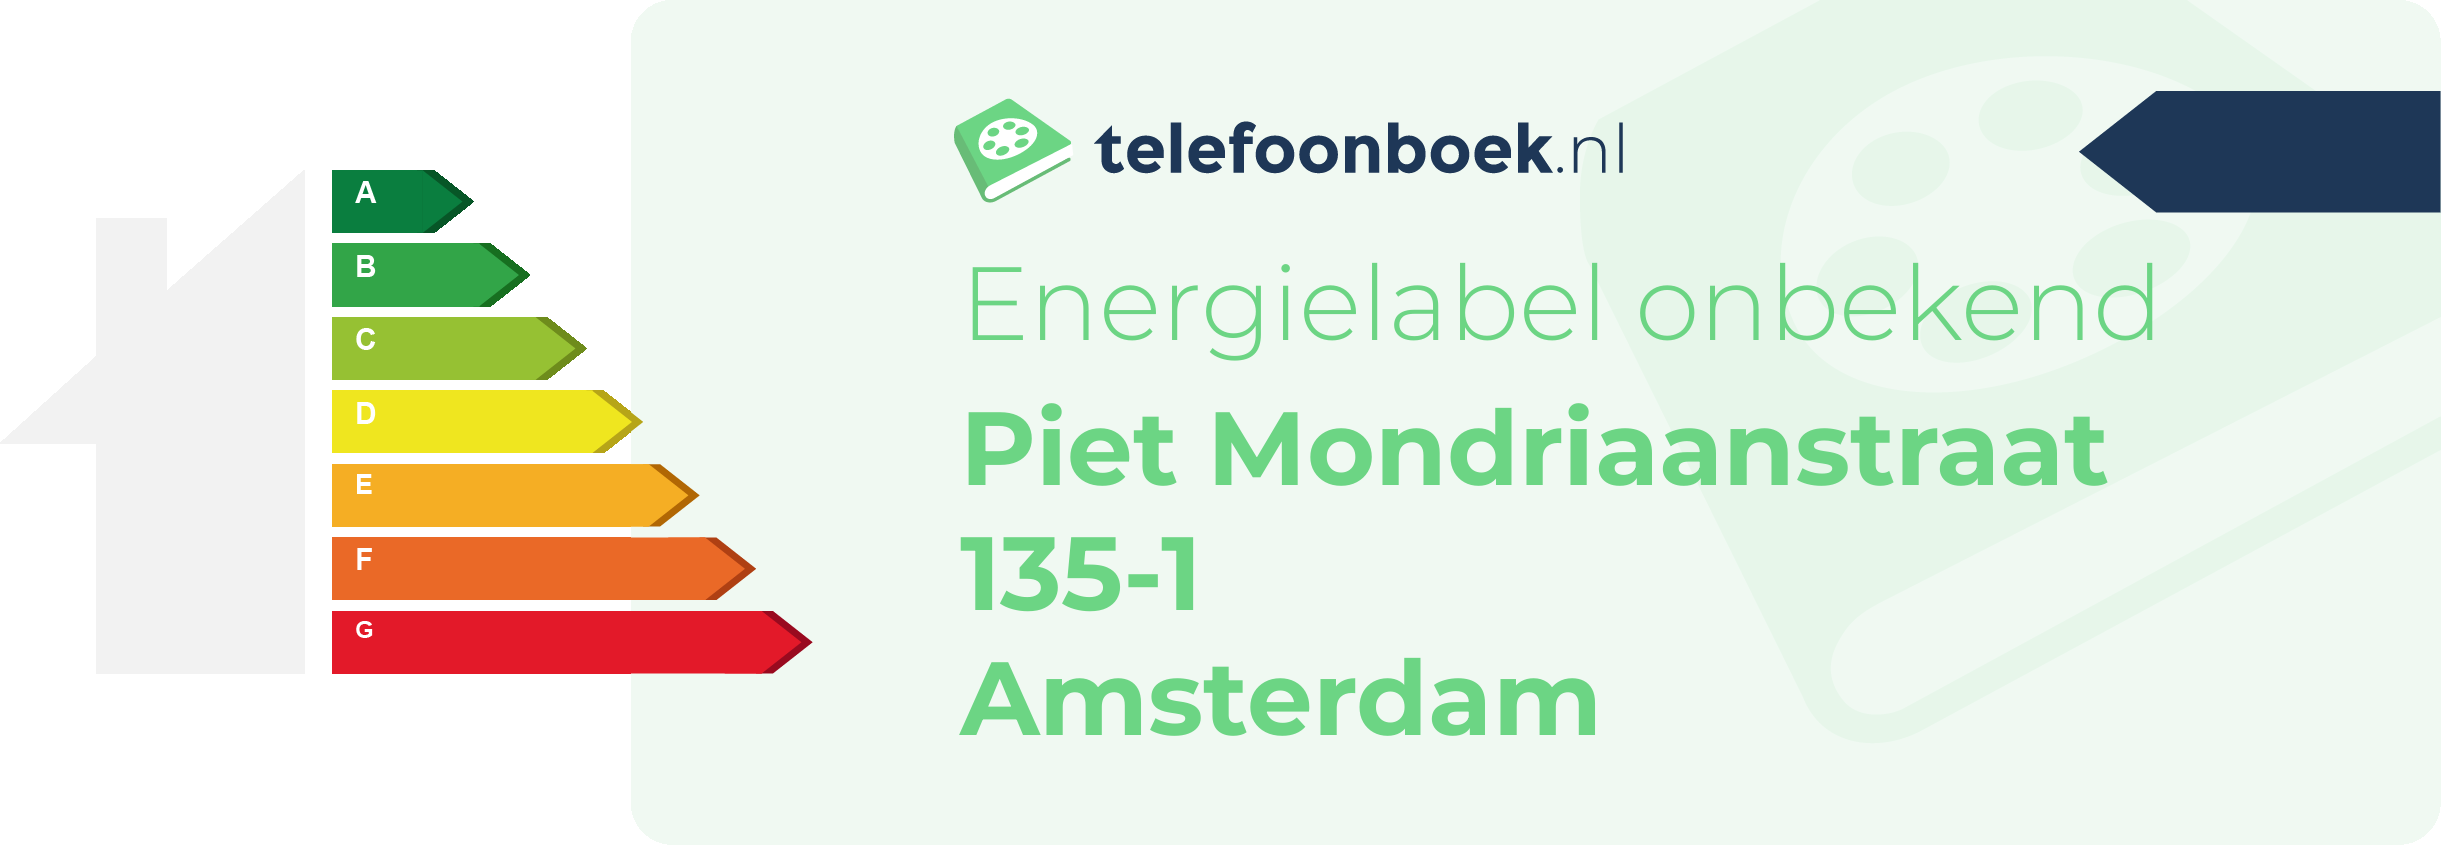 Energielabel Piet Mondriaanstraat 135-1 Amsterdam